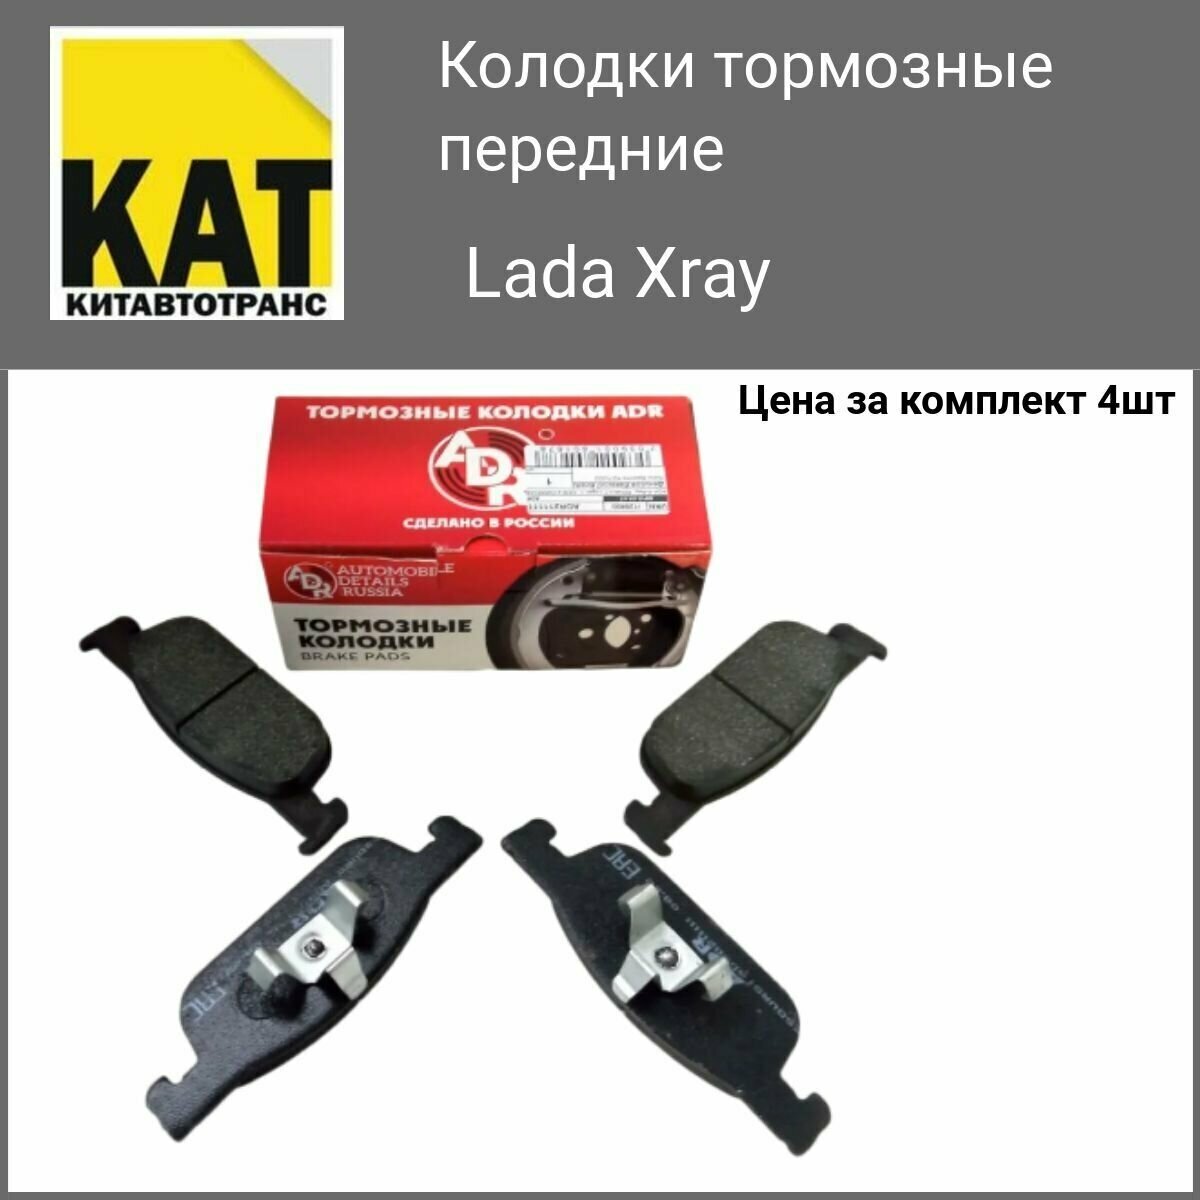 Колодки тормозные передние Лада Иксрэй (Lada Xray) ADR 155мм комплект 4шт